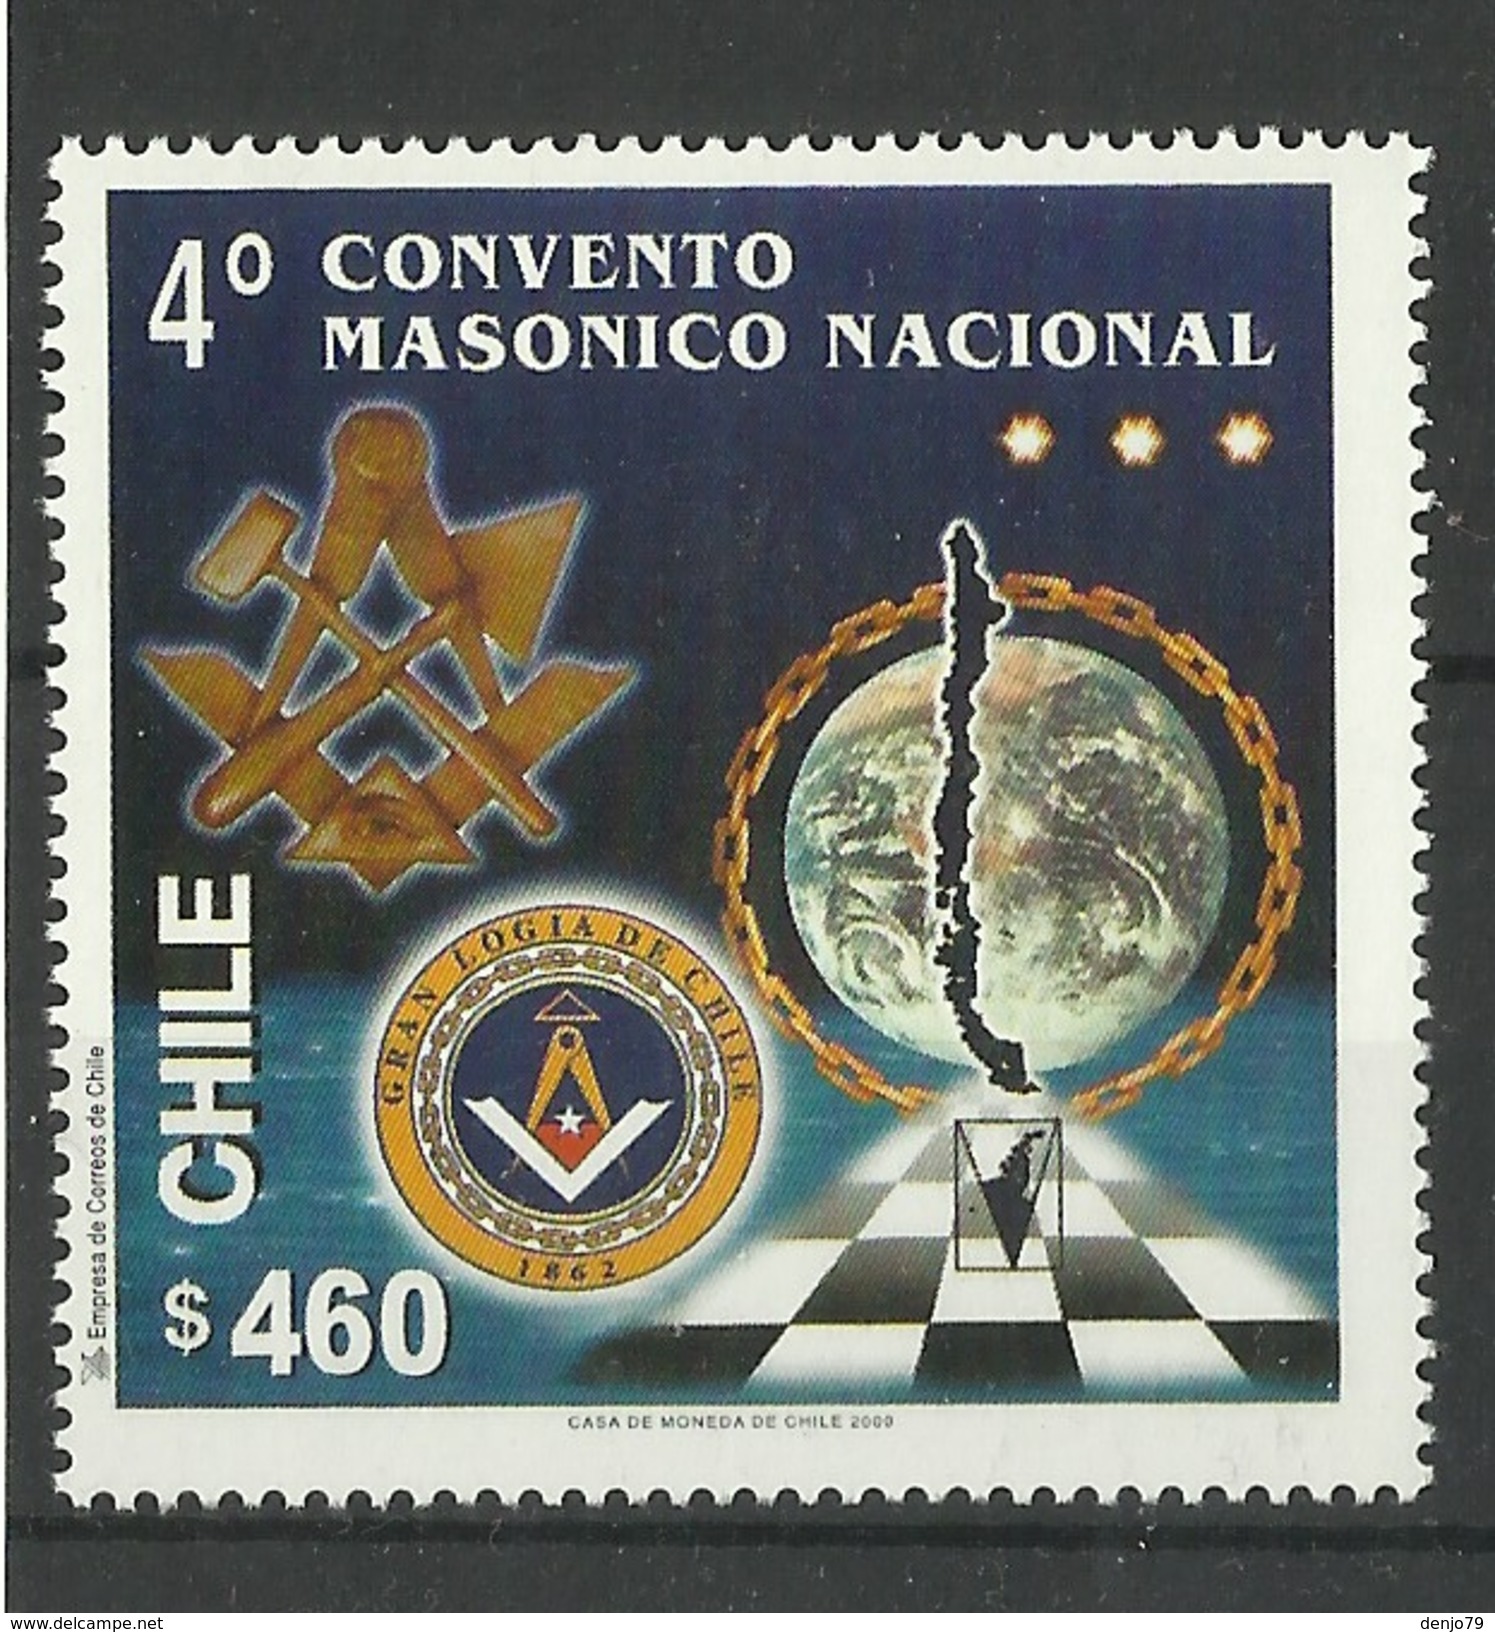 CHILE  2000  NATIONAL  MASONIC CONVENTION MNH - Chili